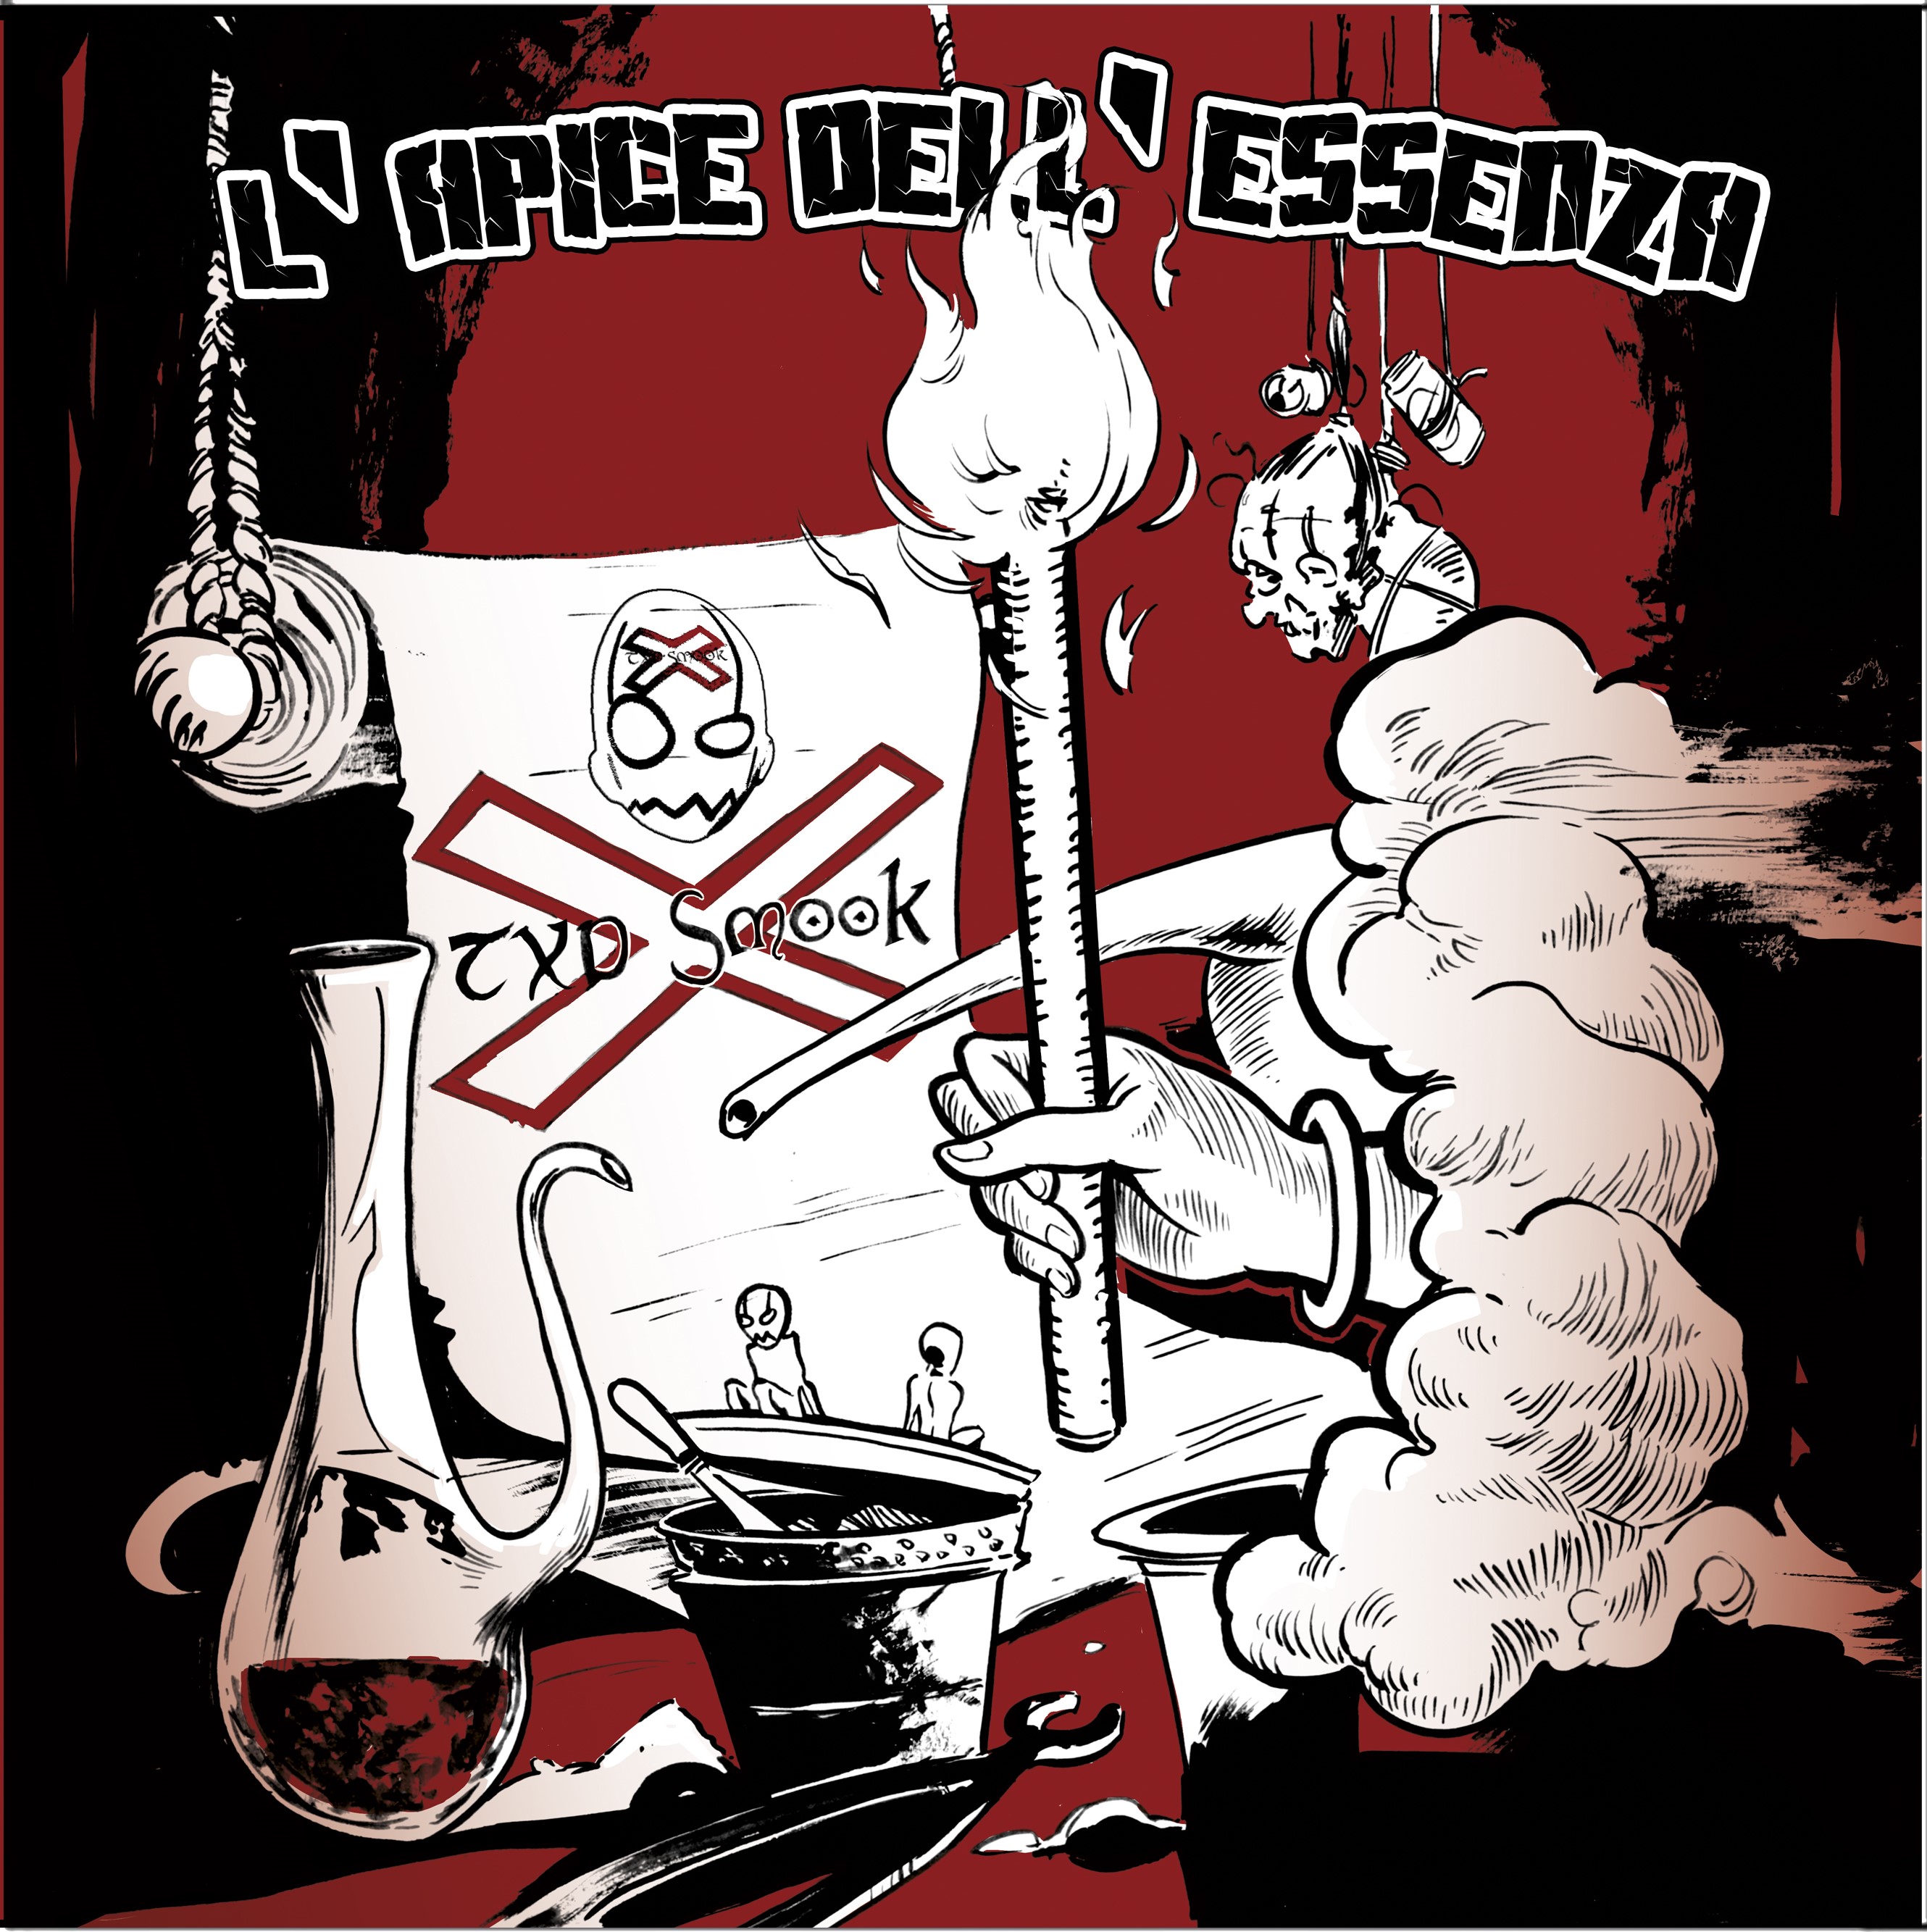 Si intitola L'APICE DELL'ESSENZA il singolo che anticipa il nuovo album dei TUXEDO SMOOKING.